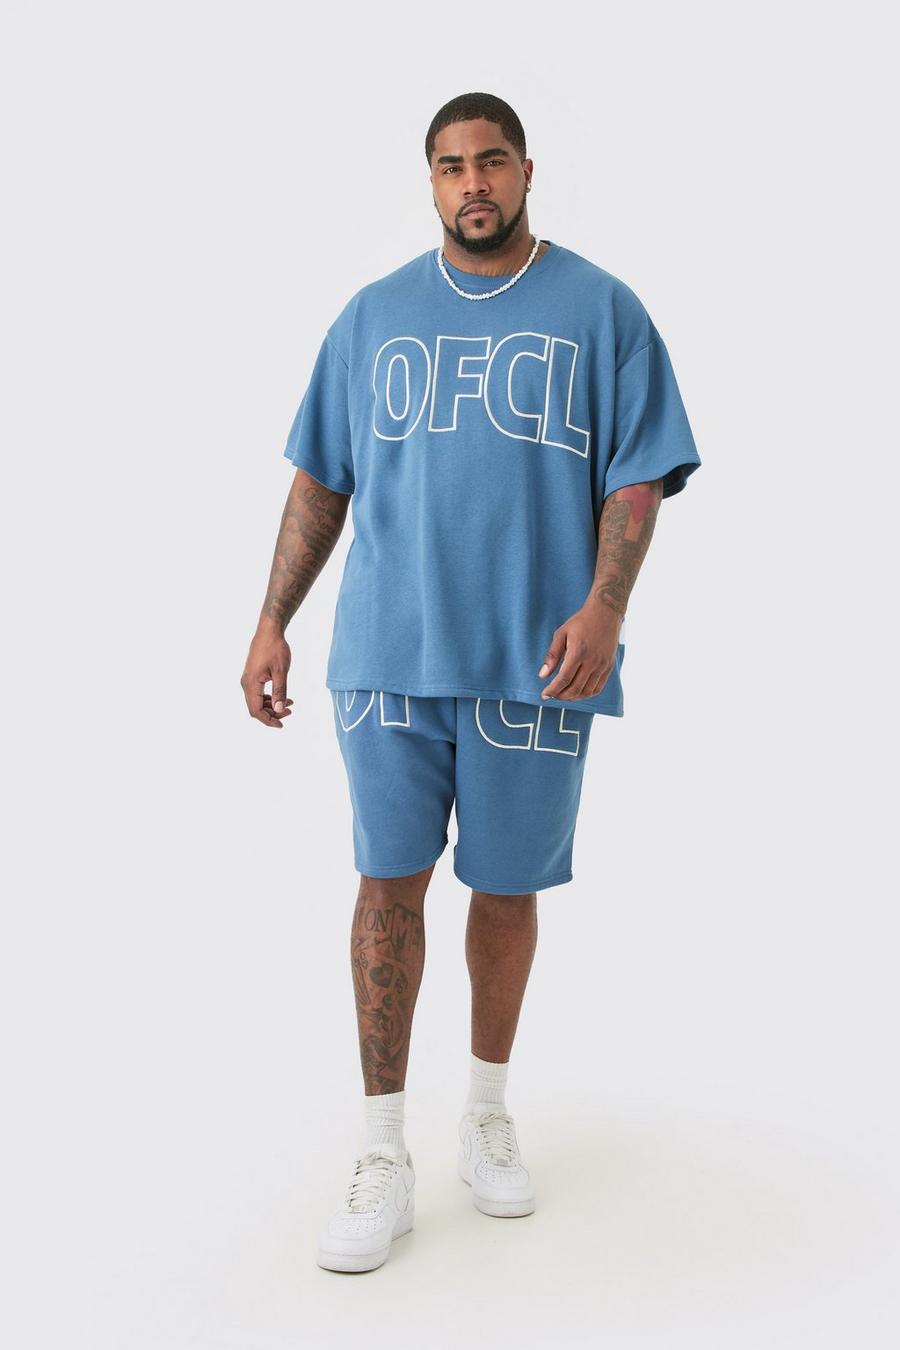 Slate blue Plus Oversized Ofcl Applique T-shirt & Short Set